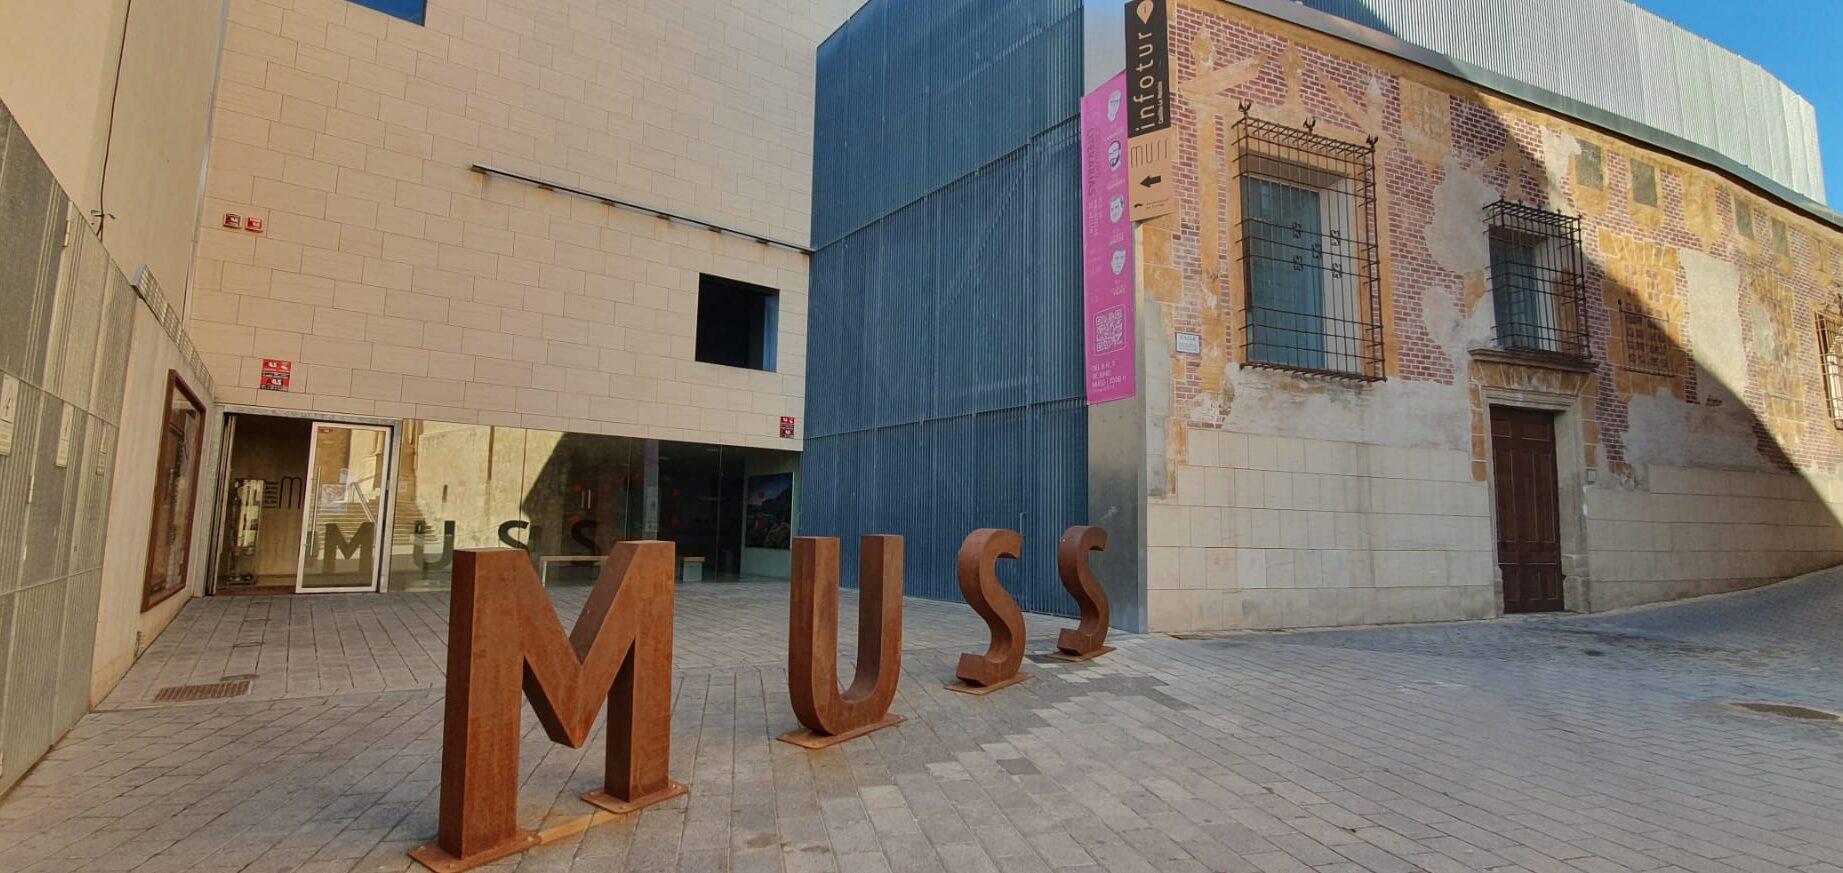 MUSEO DEL TAMBOR Y DE LA SEMANA SANTA		Tobarra	Albacete	Colección